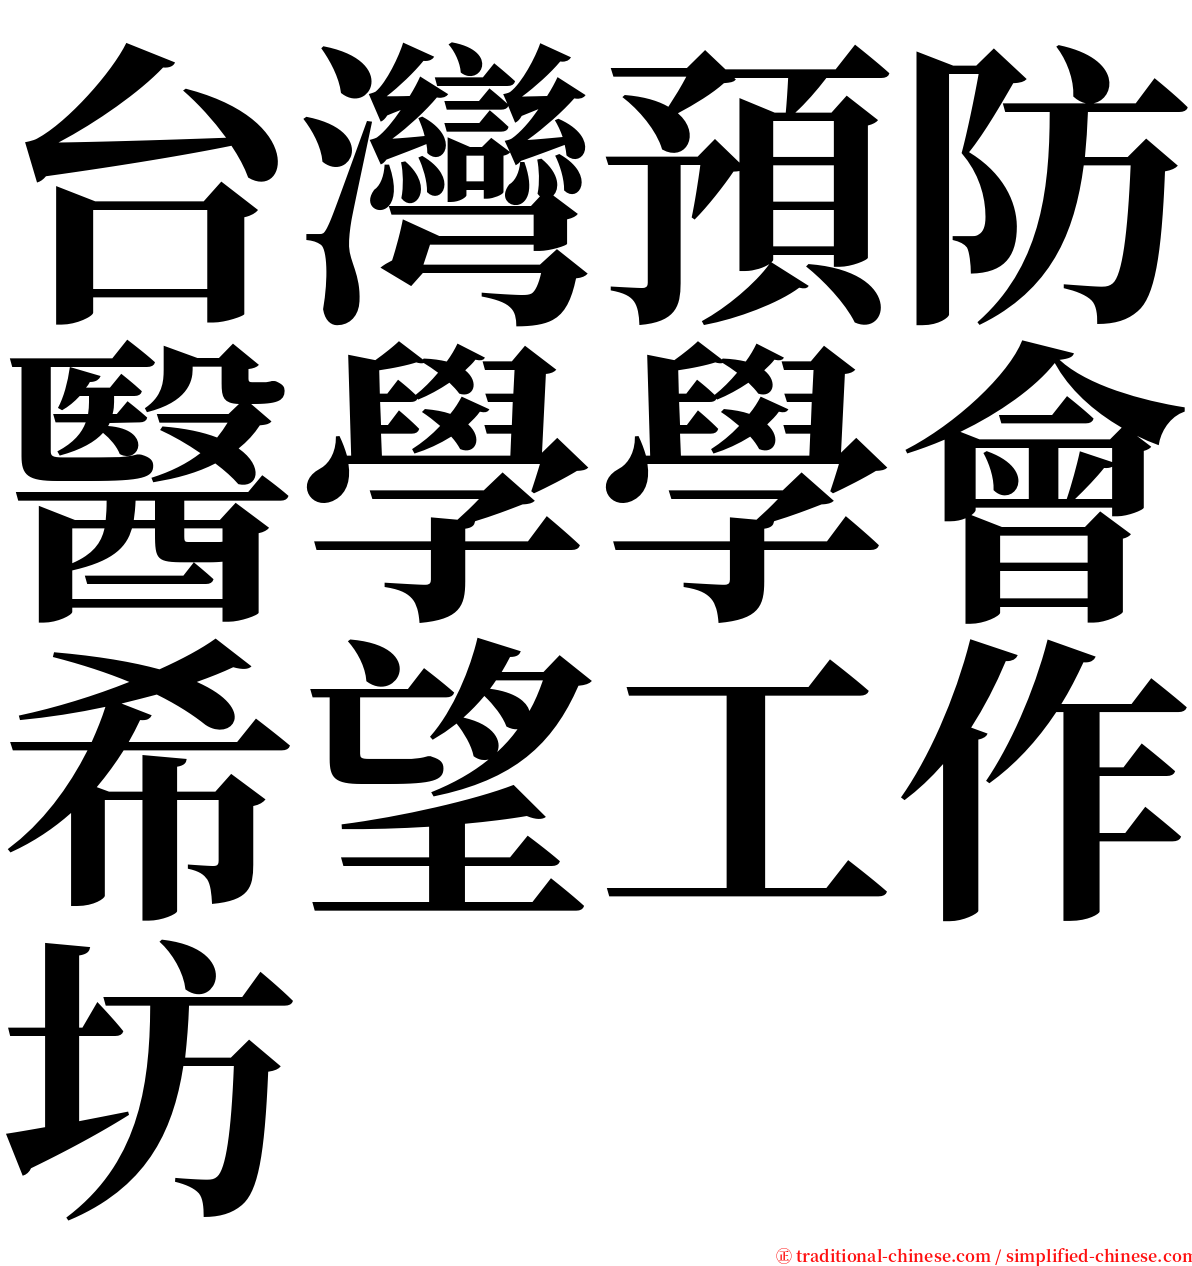 台灣預防醫學學會希望工作坊 serif font